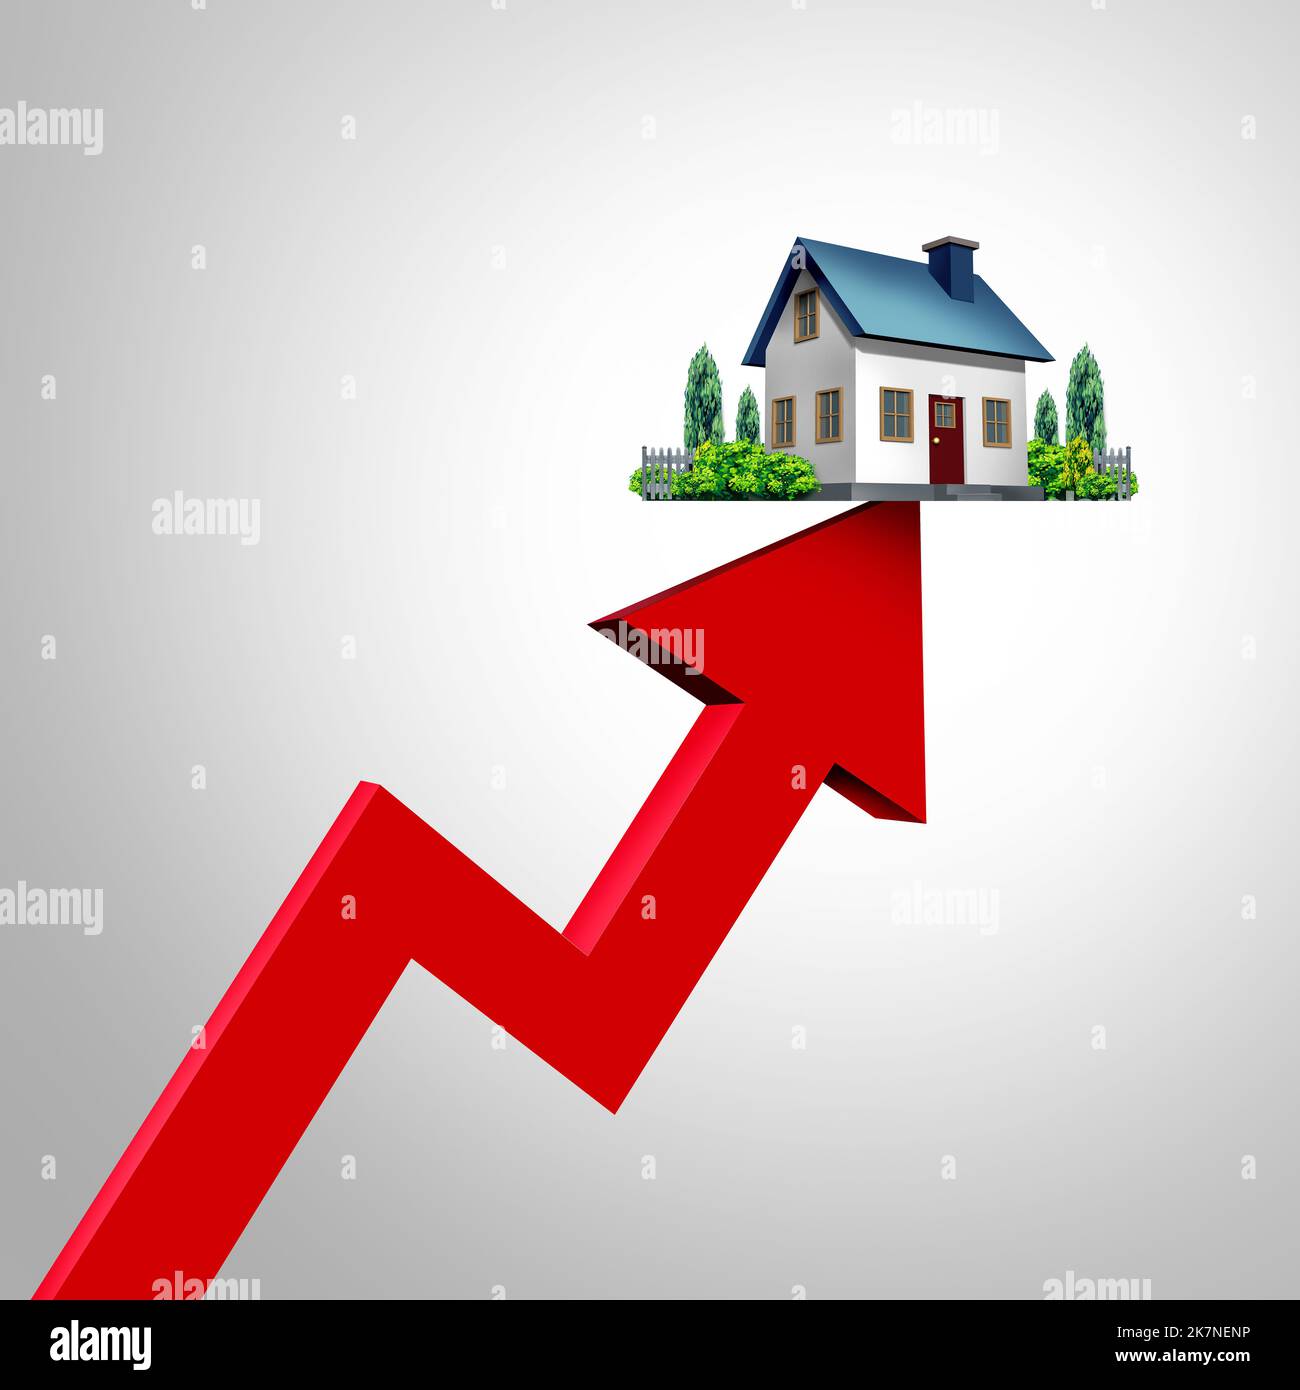 Steigende Hypothekenzinsen und steigende Eigenheimzinsen oder steigende Hypotheken- und Eigenheimpreise stiegen, da die Kreditkosten für Wohnimmobilien fällig ansteigen. Stockfoto